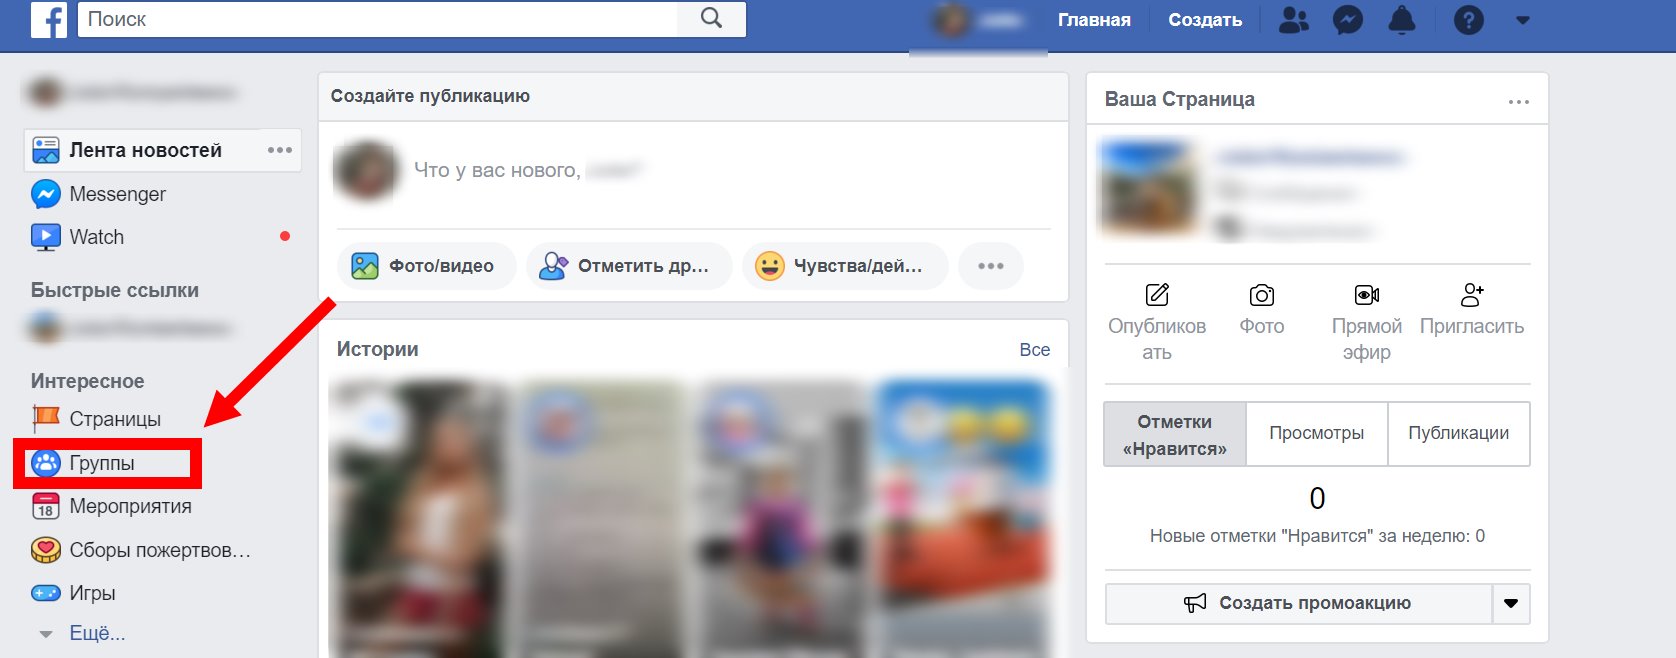 размер фото профиля в фейсбук